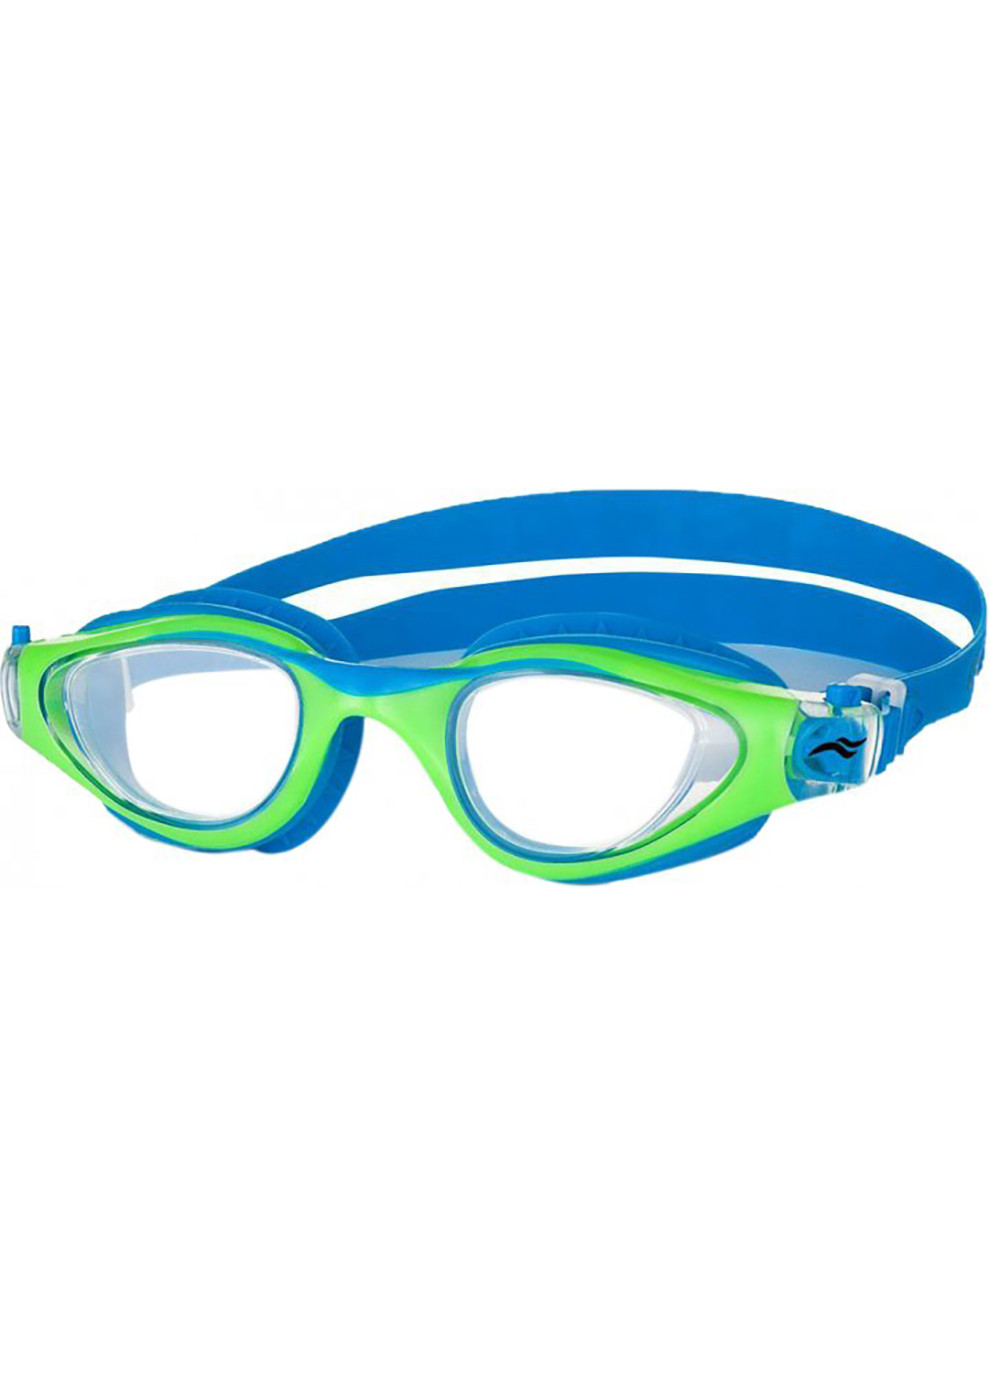 Очки для плавания MAORI 6975 синие, зеленые OSFM 051-81 Aqua Speed (259215270)